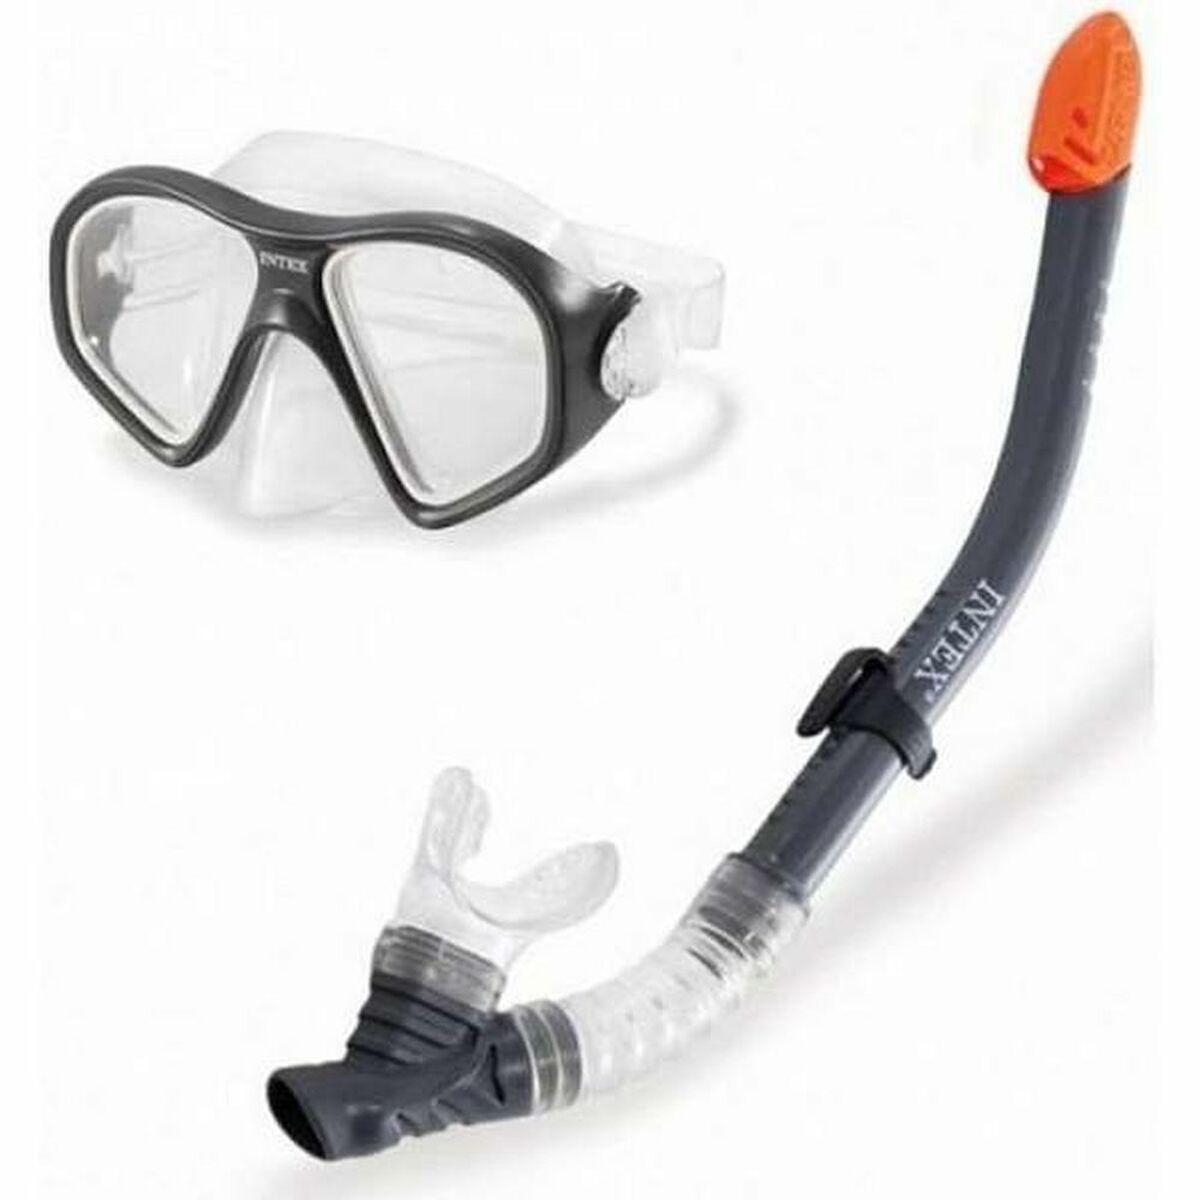 Snorkelbriller og -rør Intex